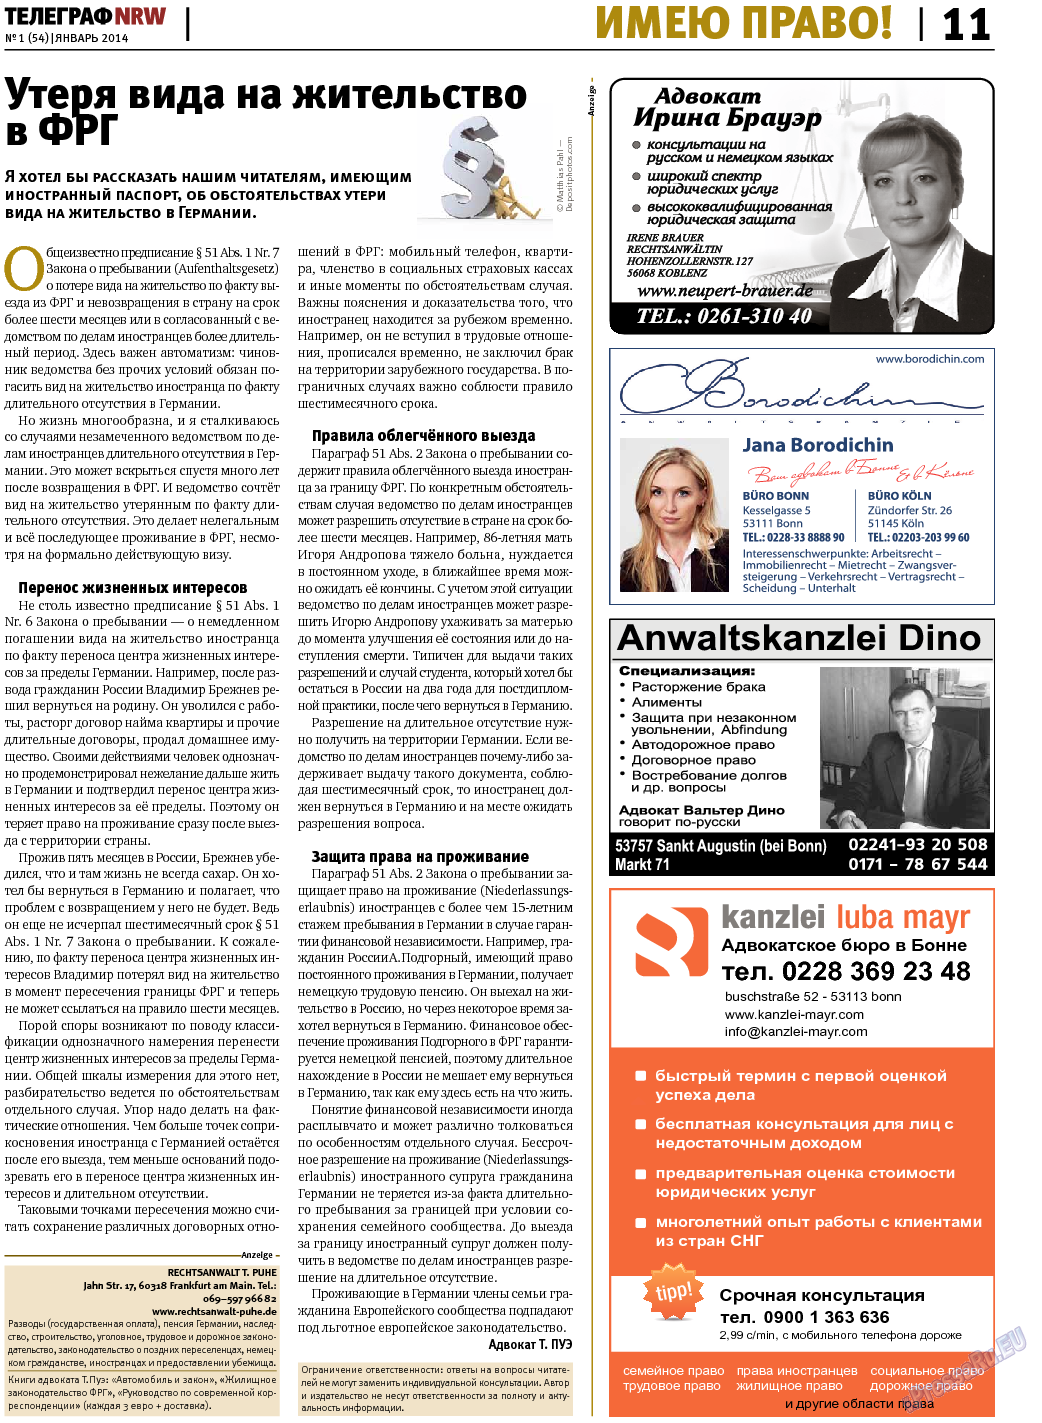 Телеграф NRW (газета). 2014 год, номер 1, стр. 11